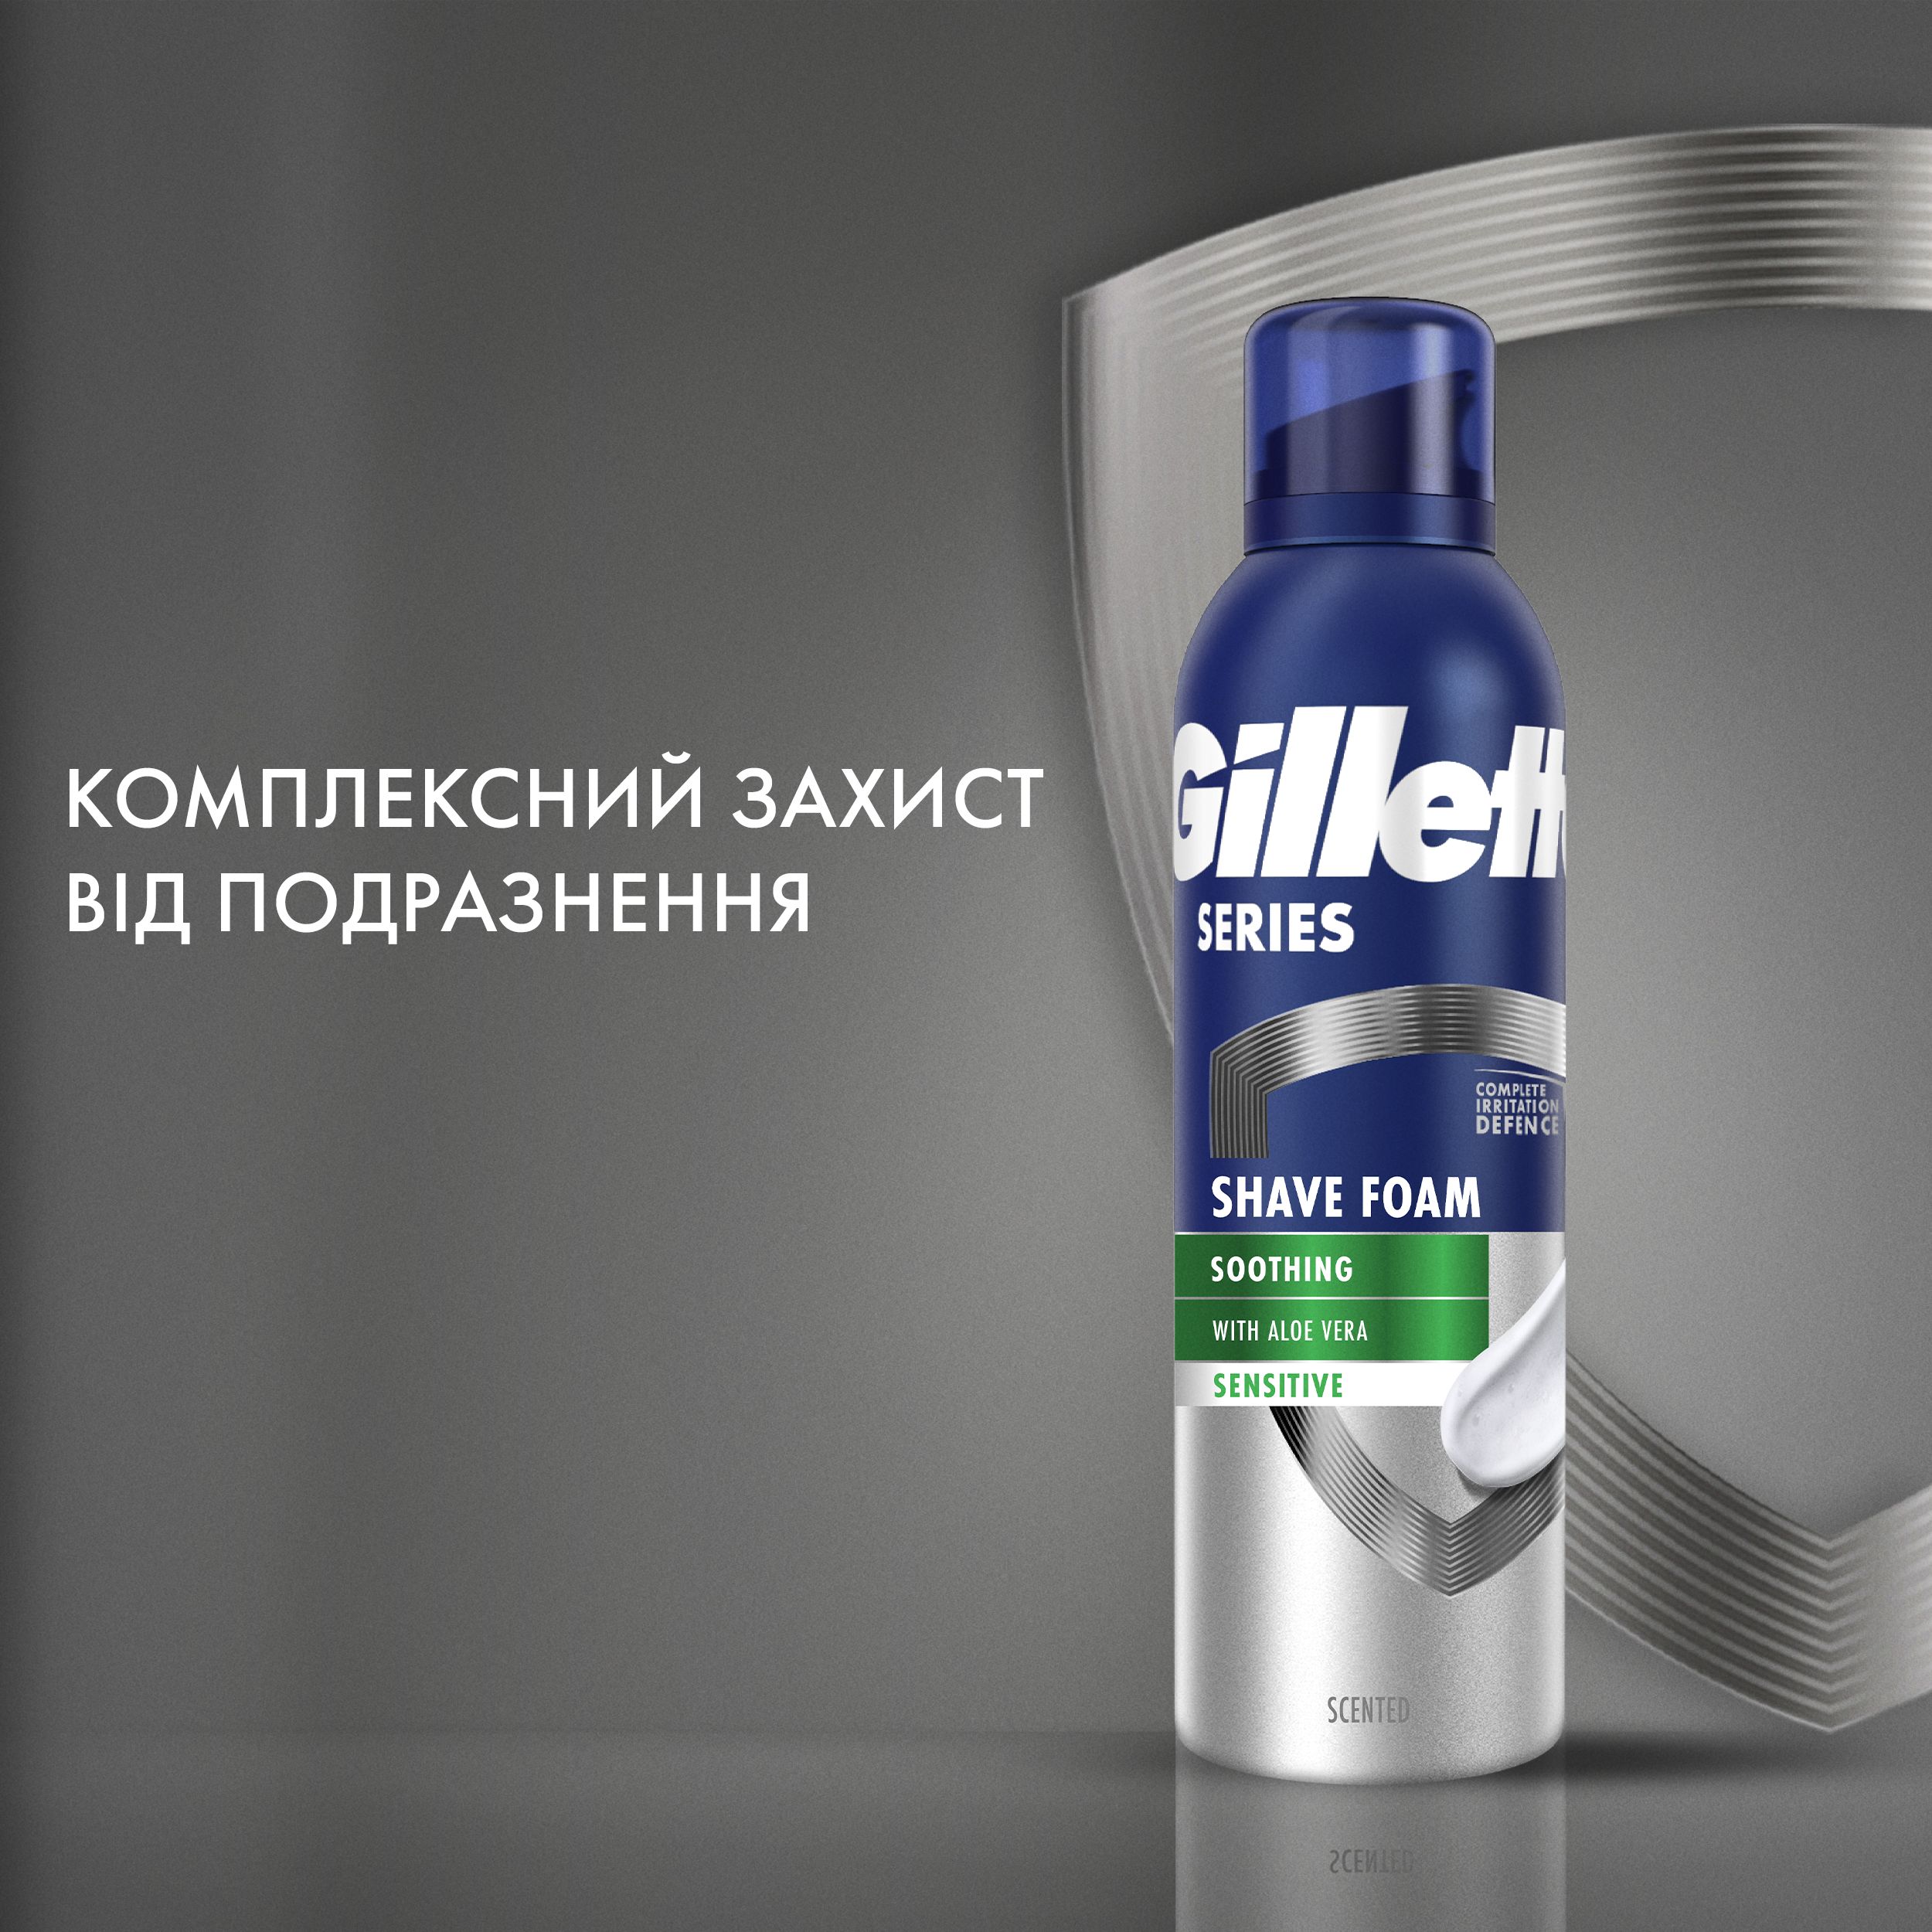 Пена для бритья Gillette Series для чувствительной кожи, с алоэ вера, 200 мл - фото 7